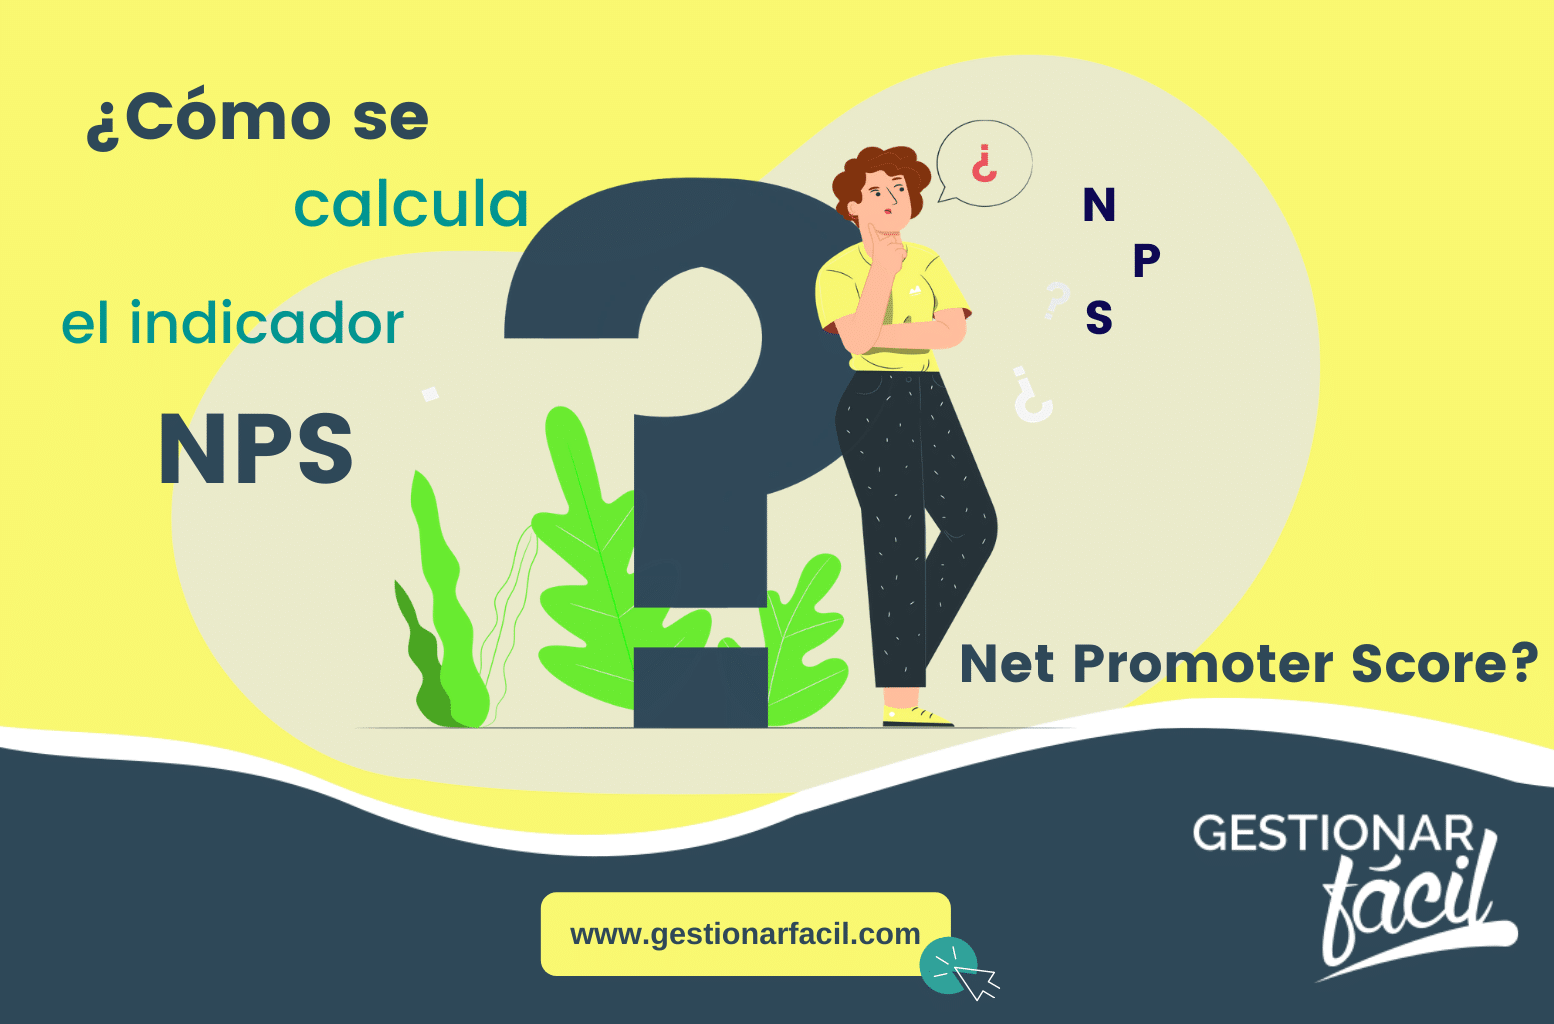 ¿Cómo se calcula el indicador NPS: Net Promoter Score?